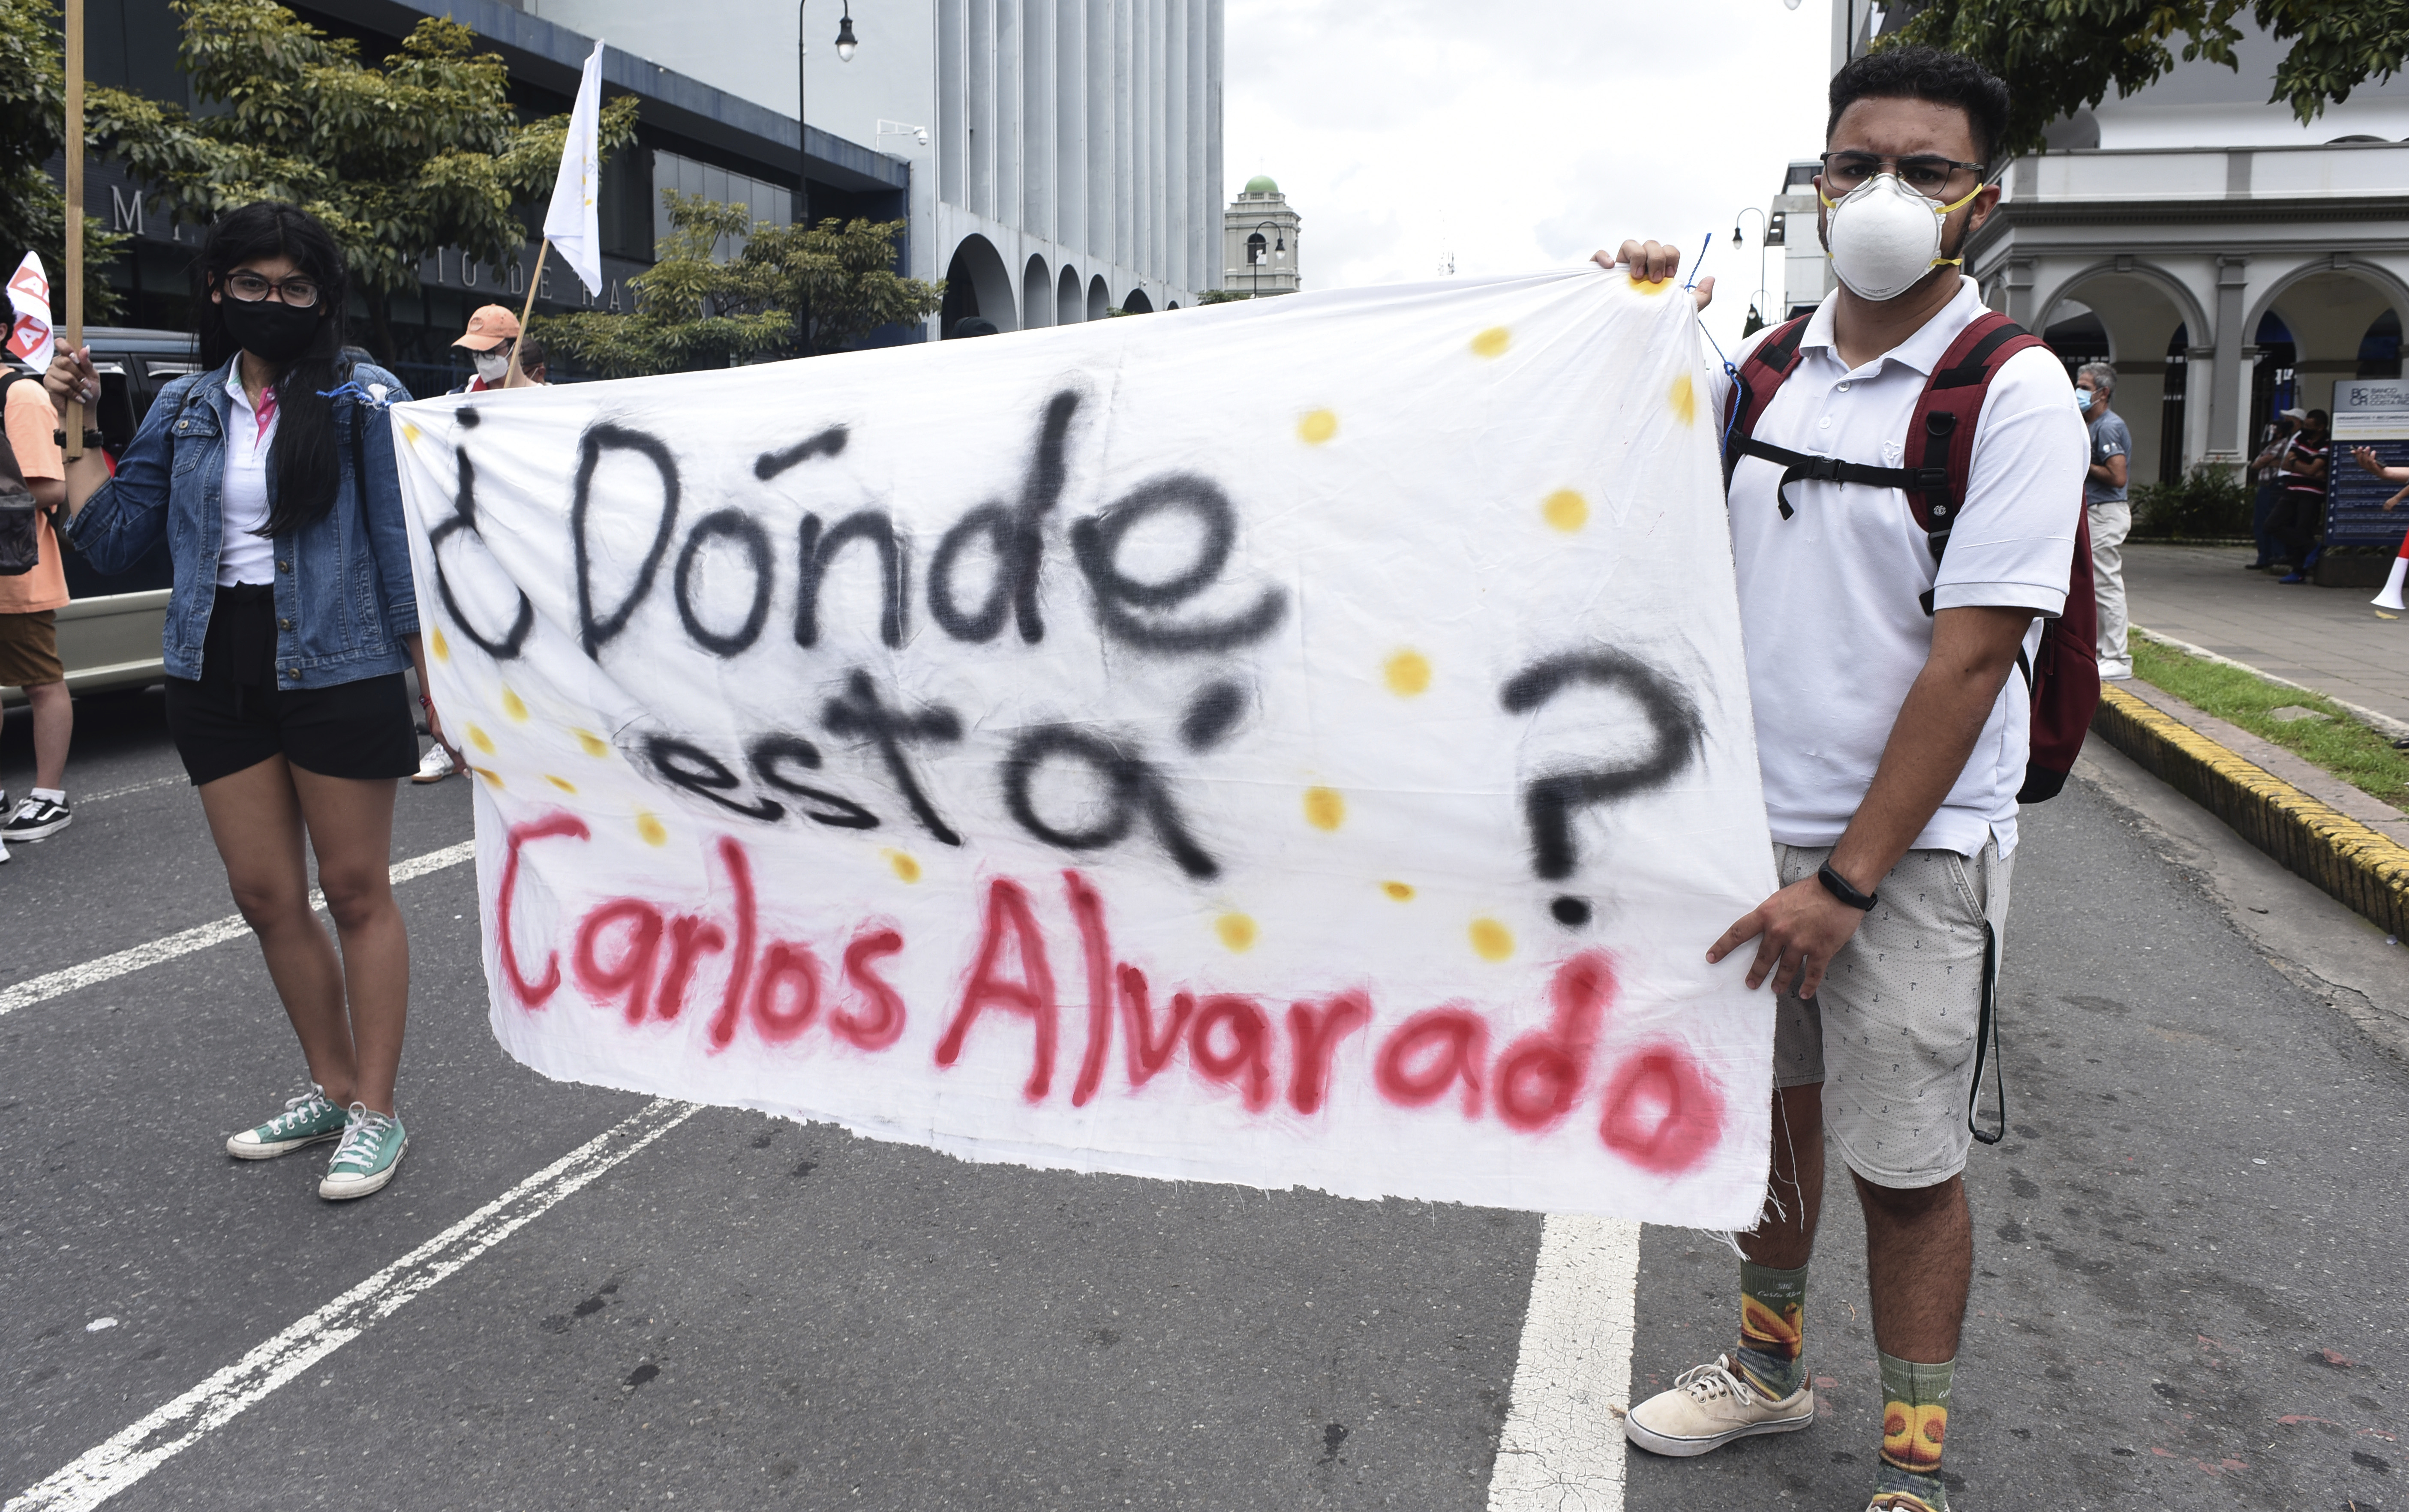 Proteste Costa Rica IWF